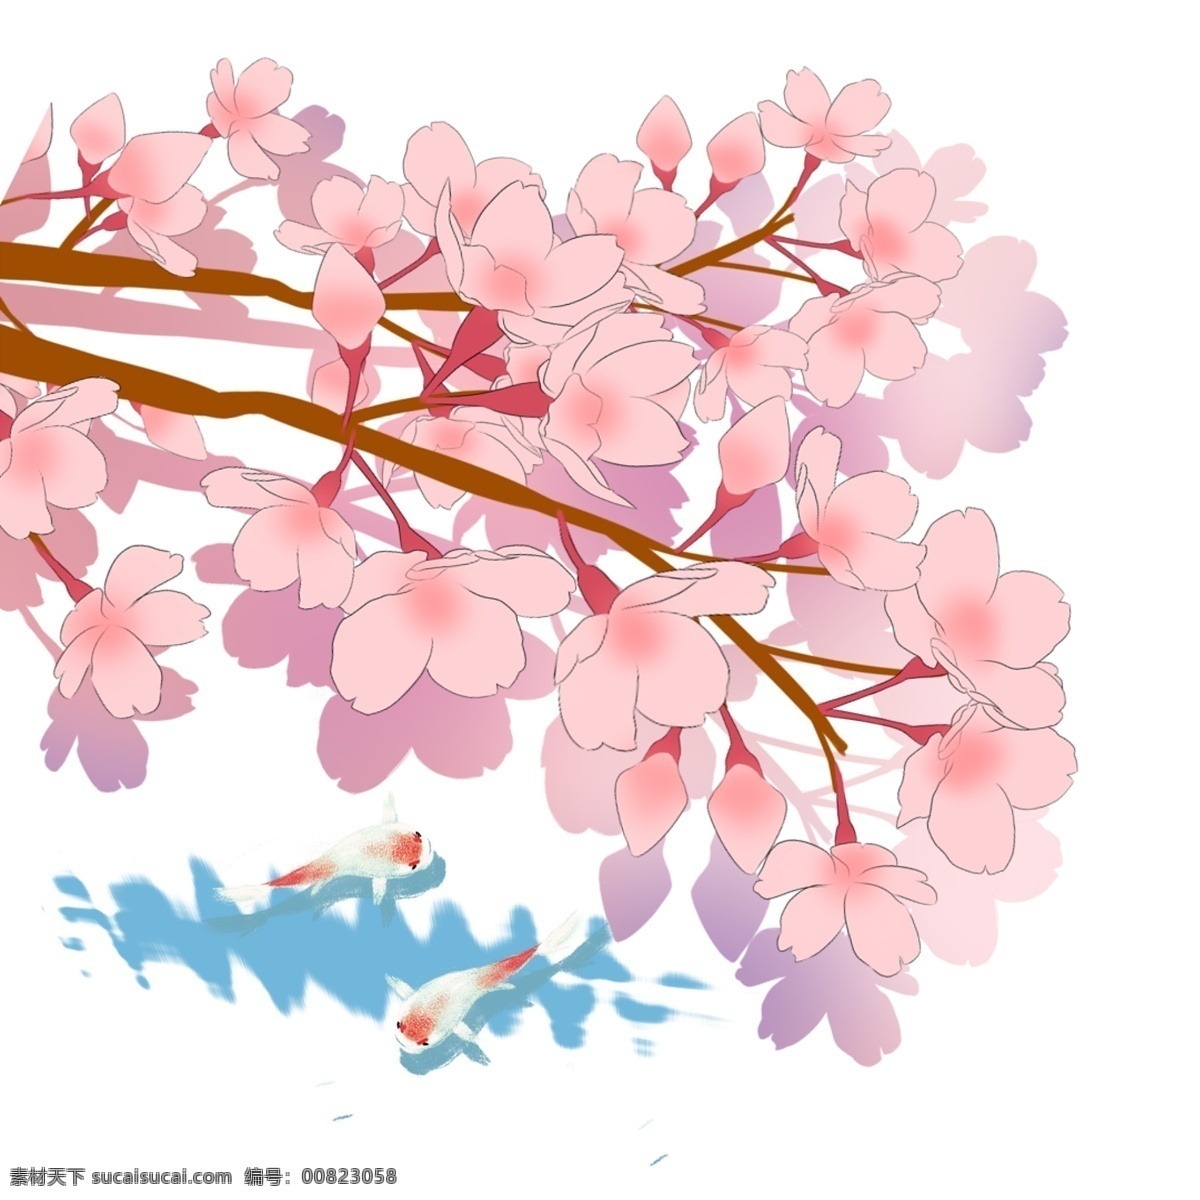 日本 春季 樱花 锦鲤 风景 图 春天 花卉 花朵 粉色花瓣 樱花树 树枝 观赏樱花 手绘樱花 水纹 波浪 池塘景致